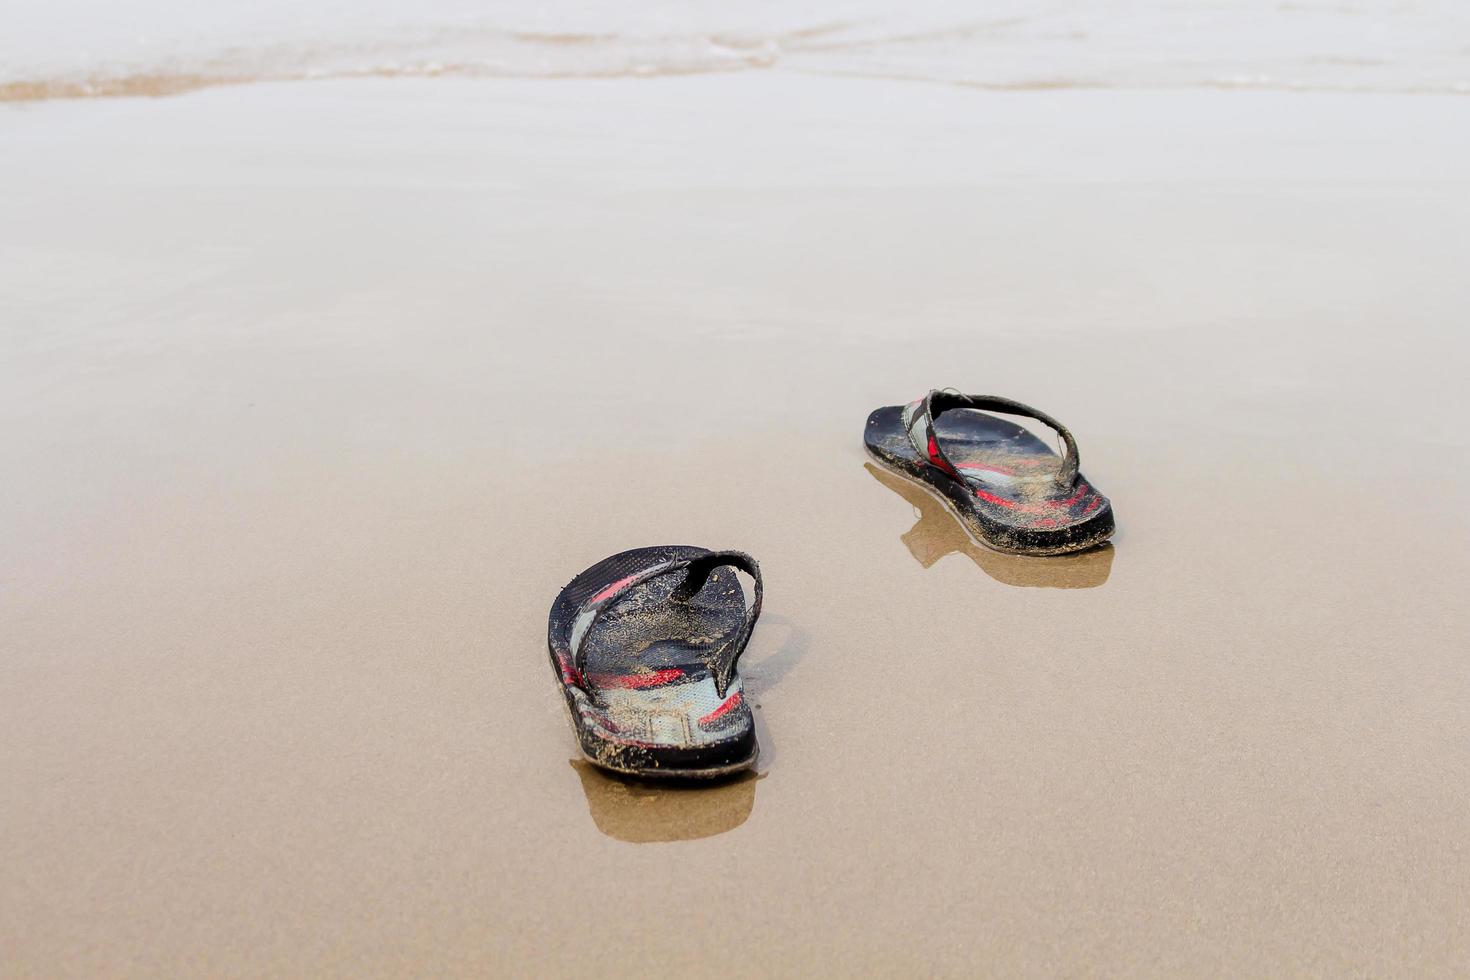 togliti le scarpe per nuotare al mare nella vacanza relax foto